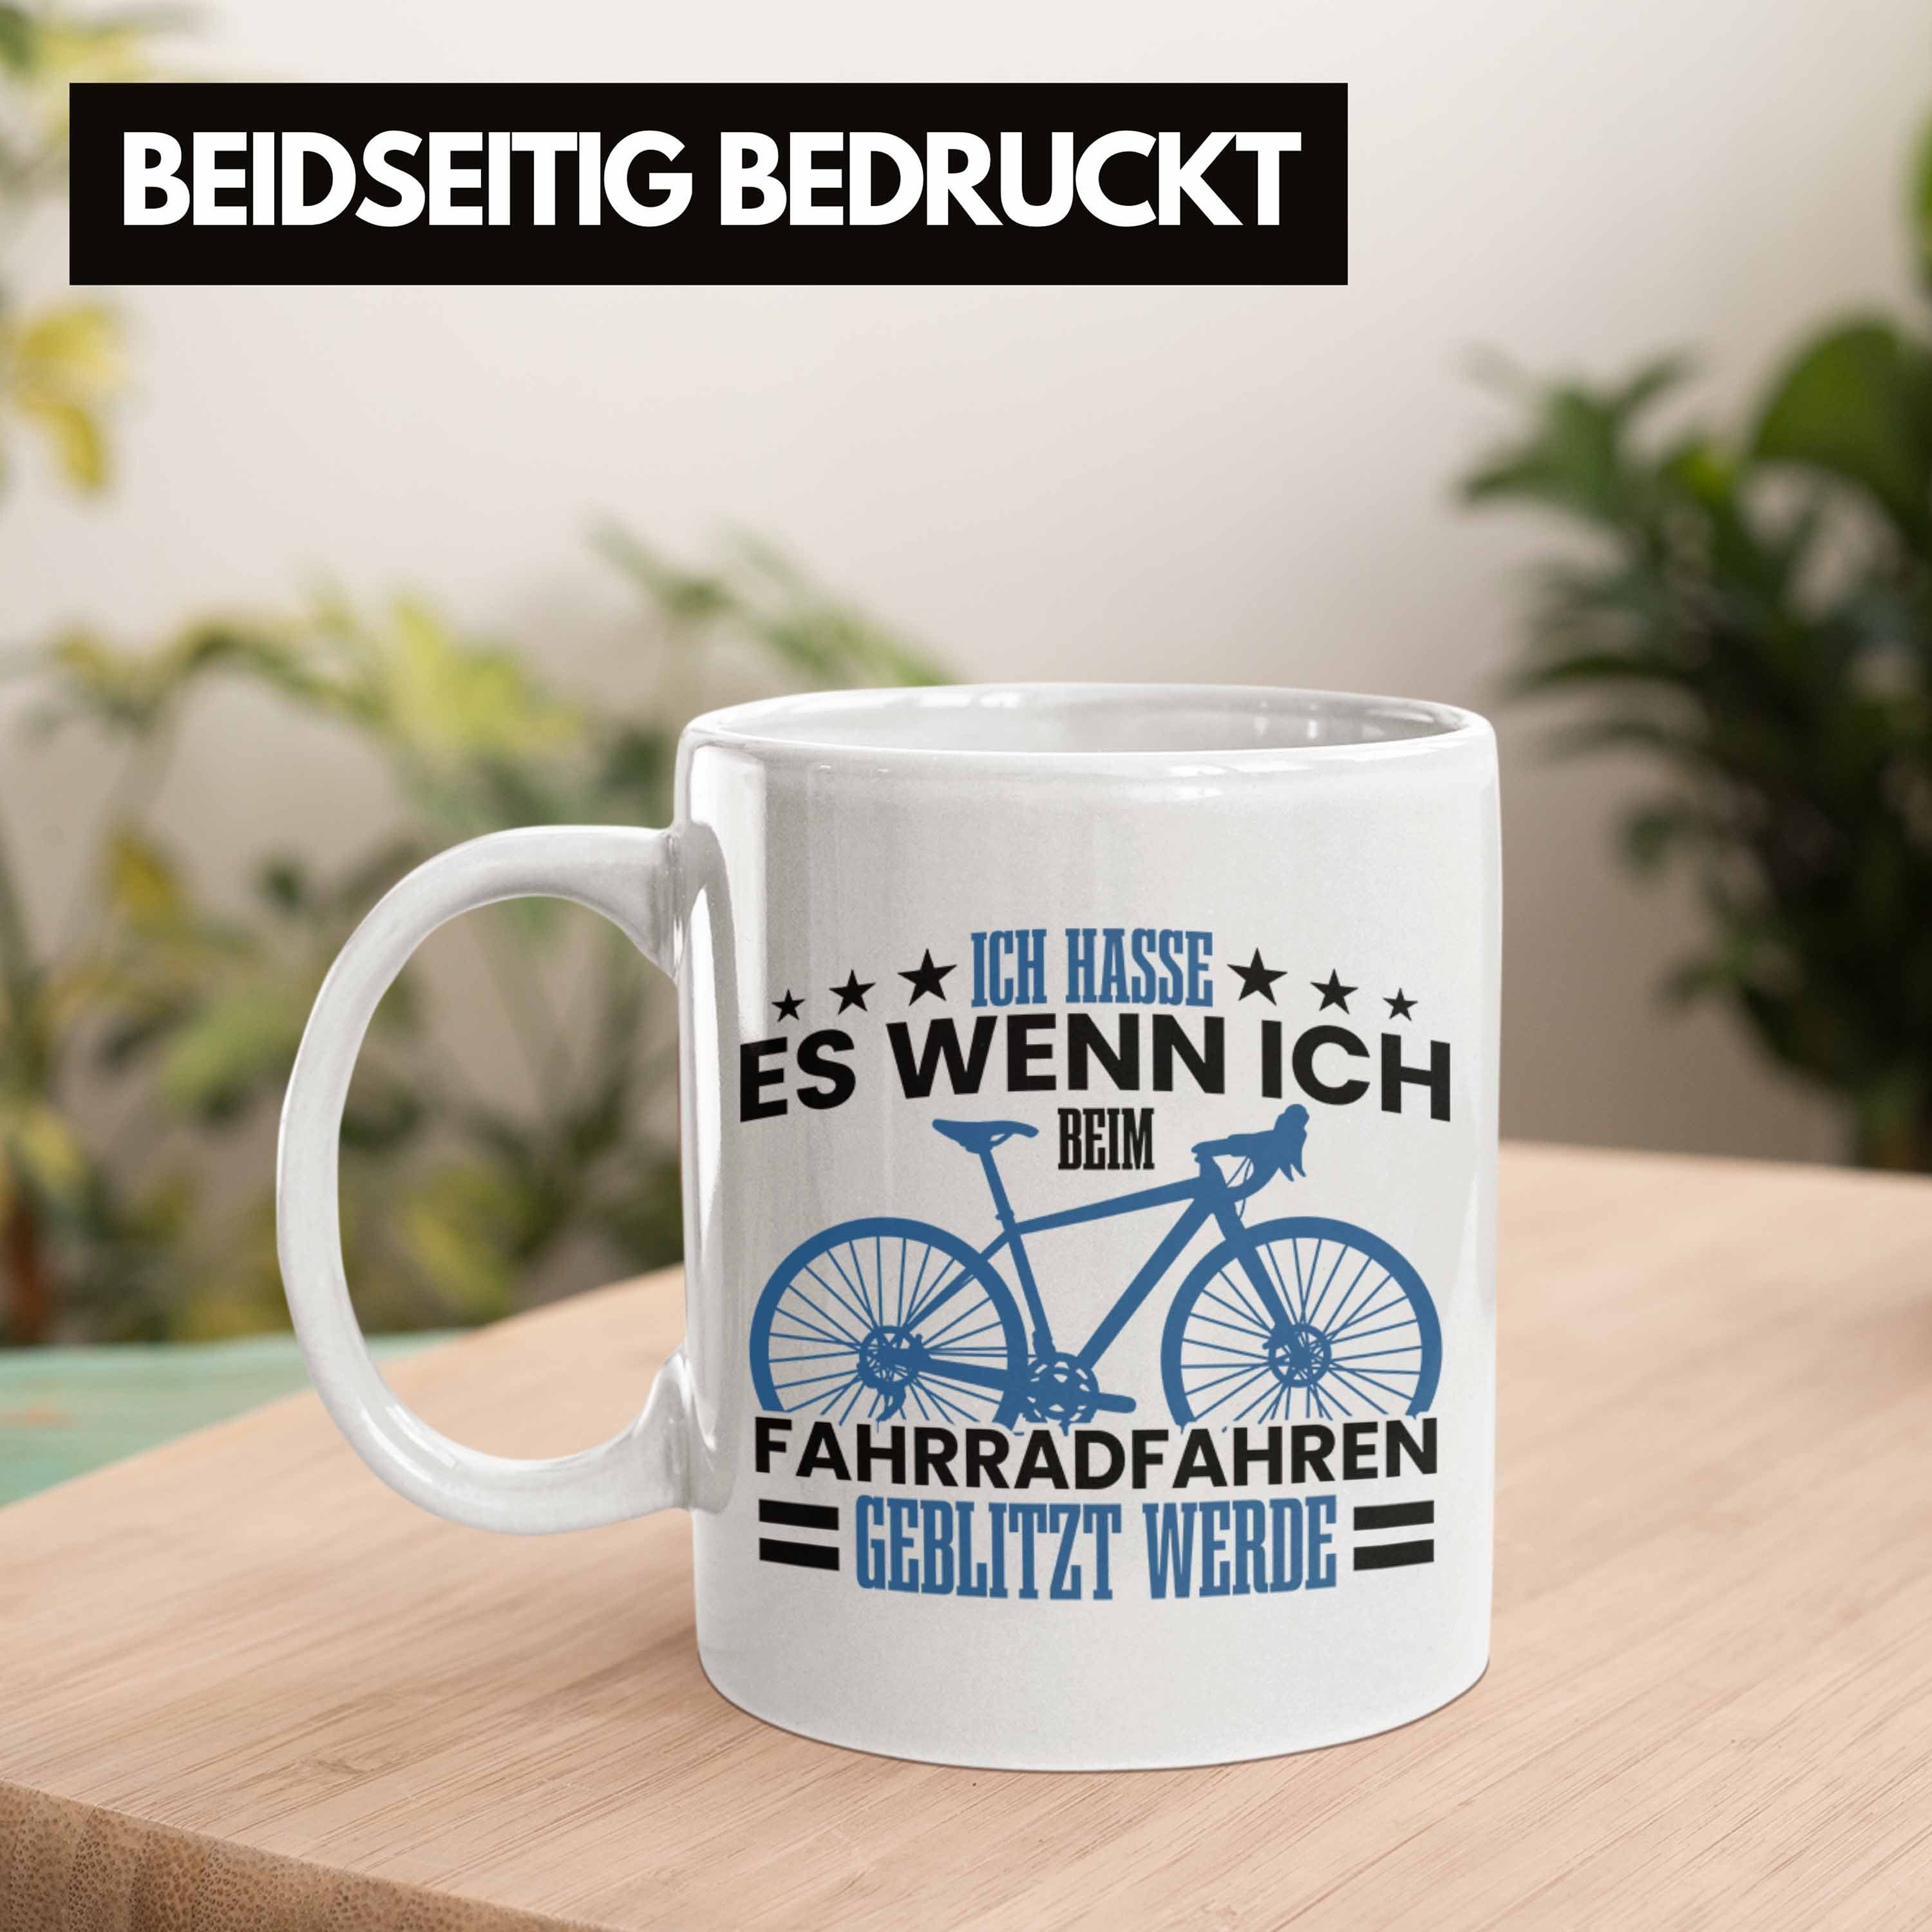 Trendation Tasse Tasse Fahrradfahrer Geschenk Weiss Geblitzt Radfahrer Fahrradfahrern für Wer